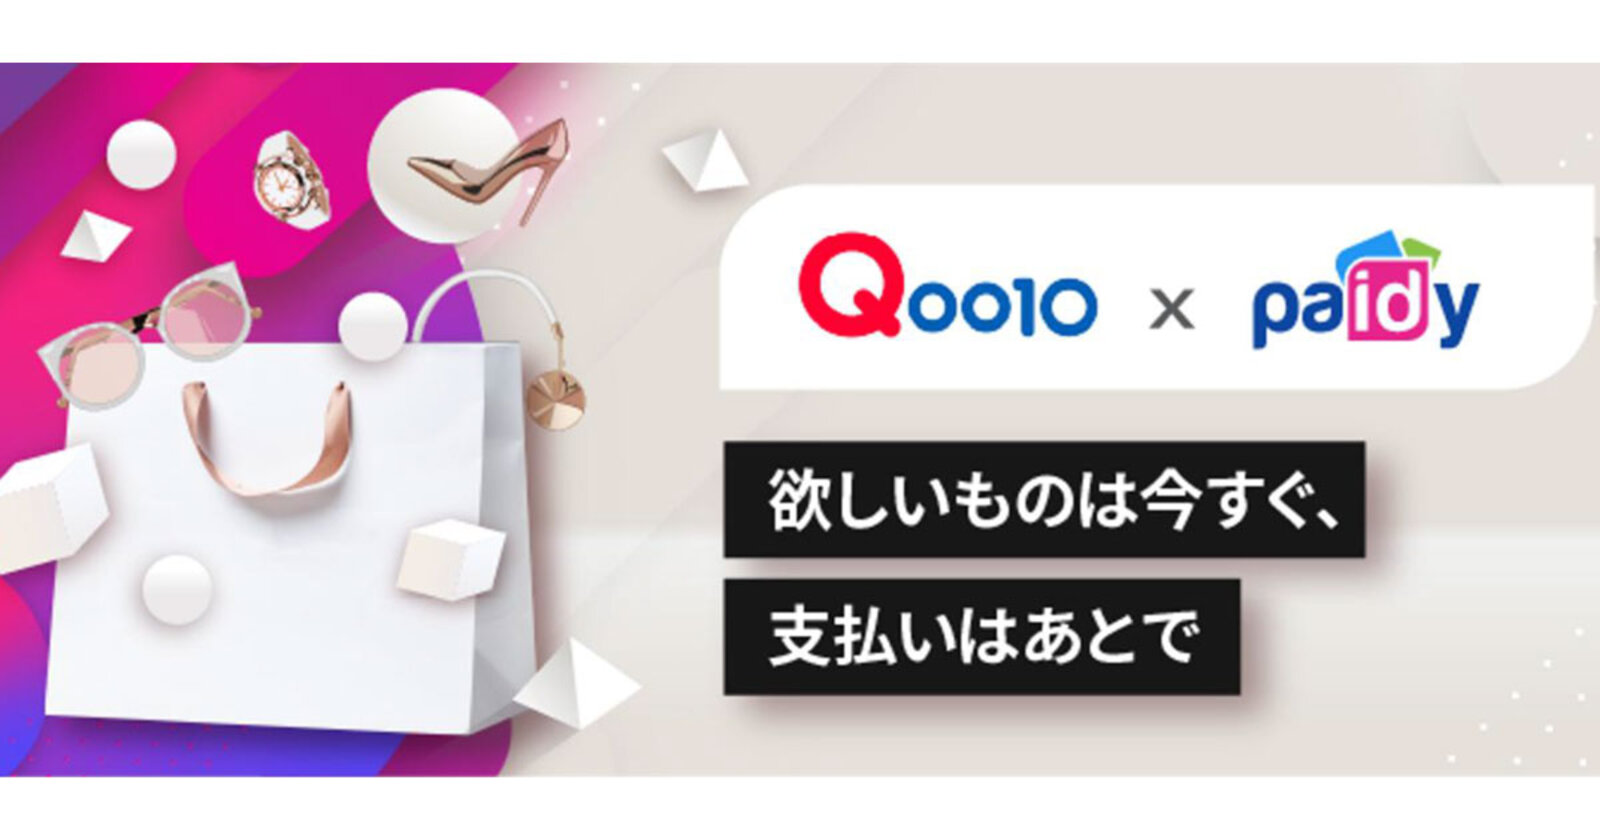 Qoo10 が Paidy ペイディー 導入 後払い決済に対応 ネットショップ担当者フォーラム